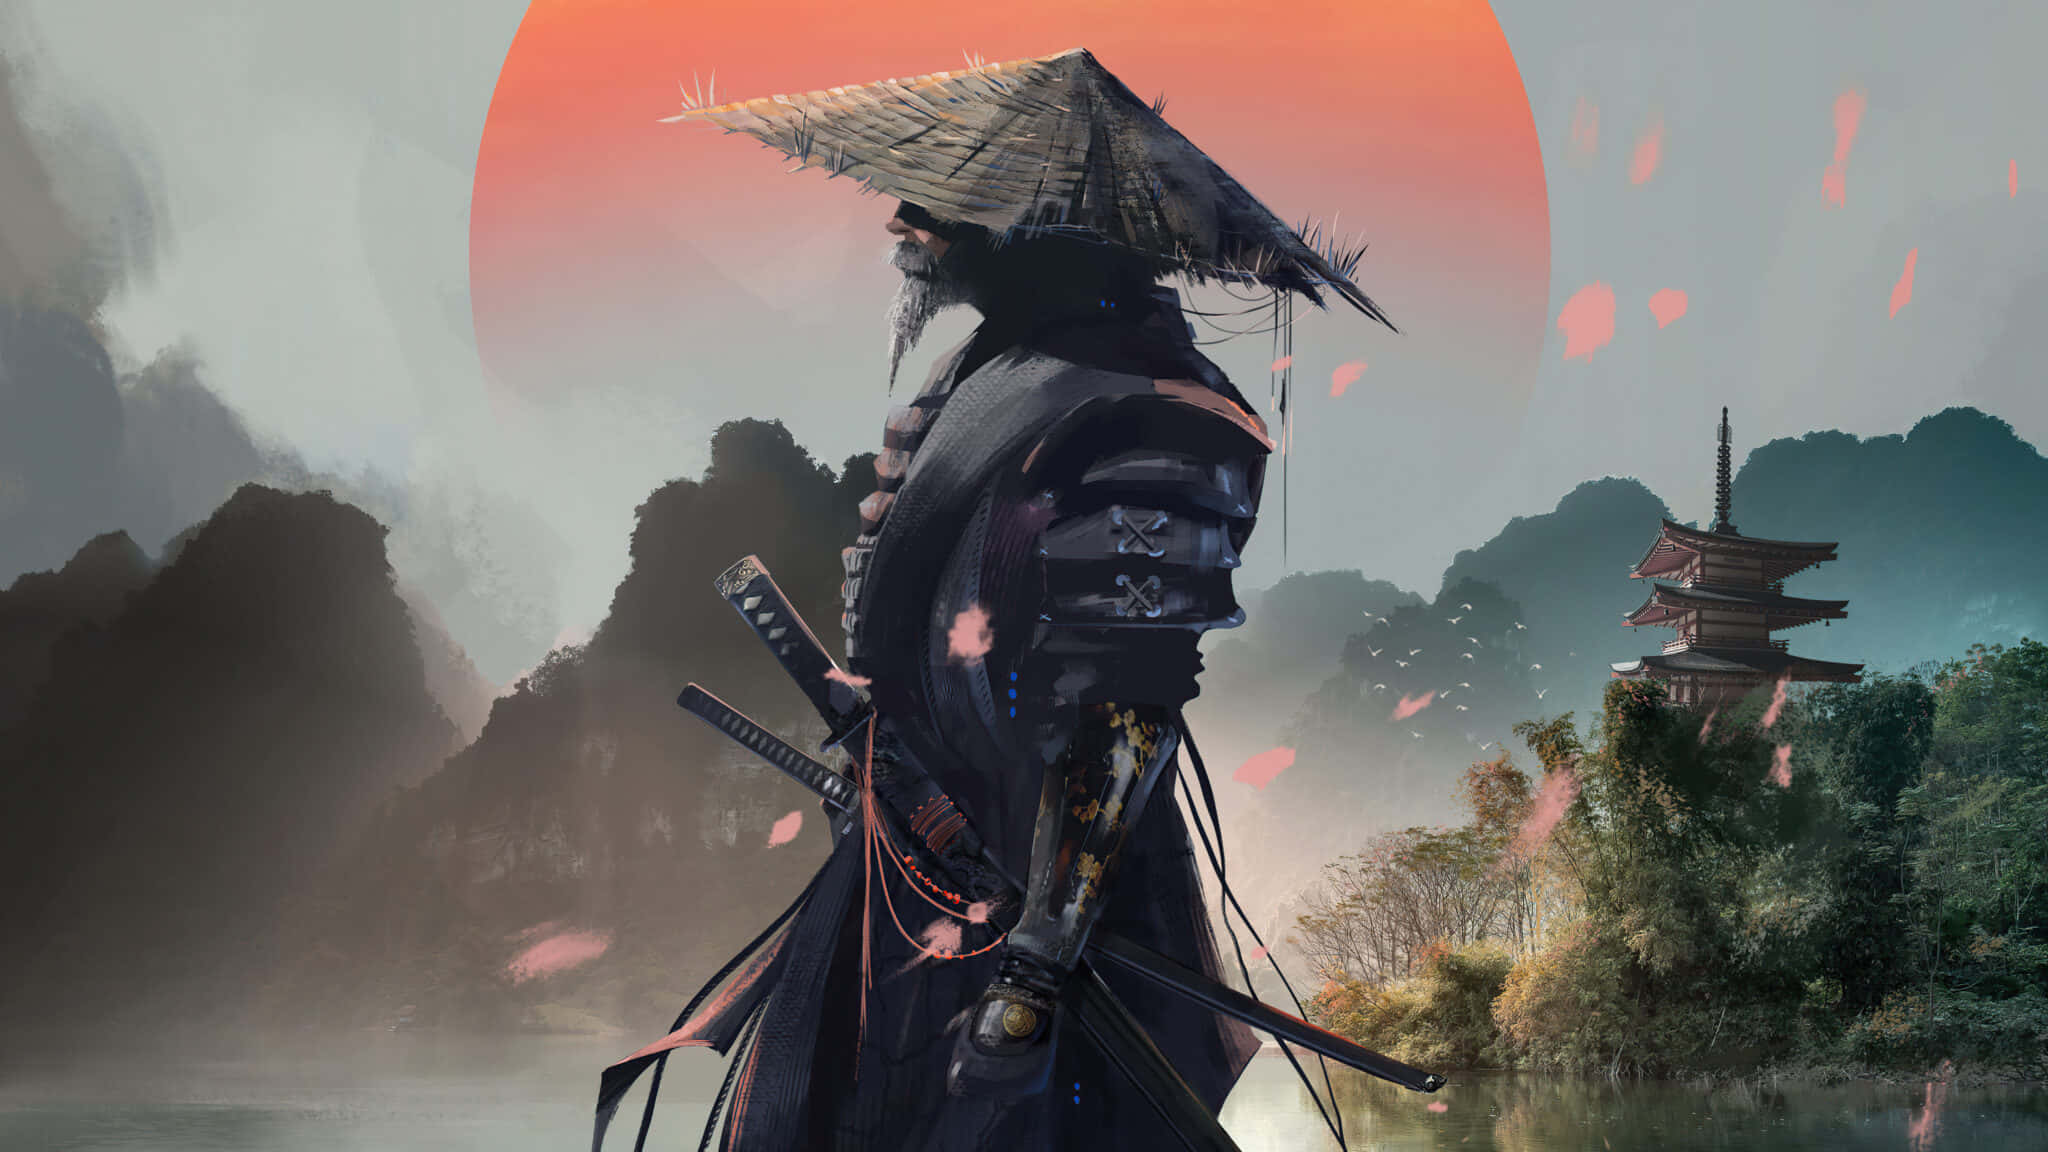 A Samurai Warrior Preparing to Face an Unexpected Battle 